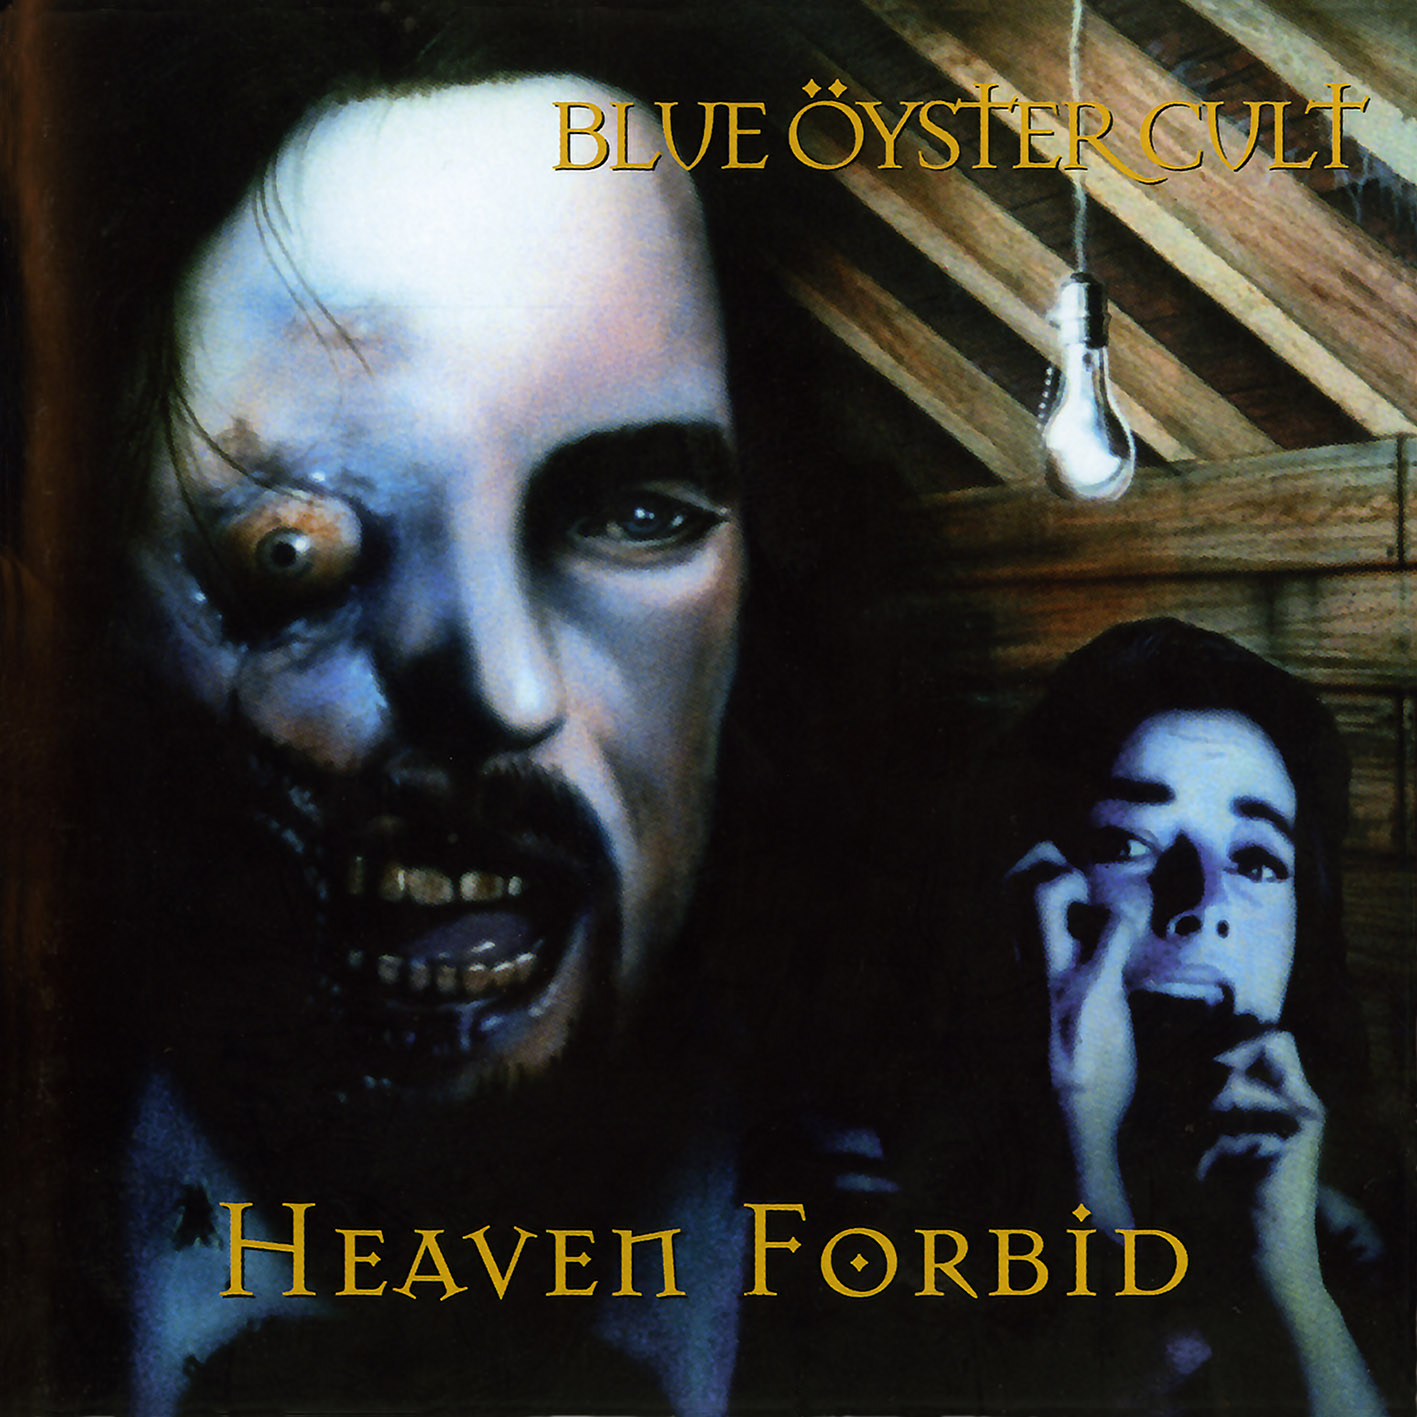 BLUE OYSTER CULT - “Heaven Forbid”